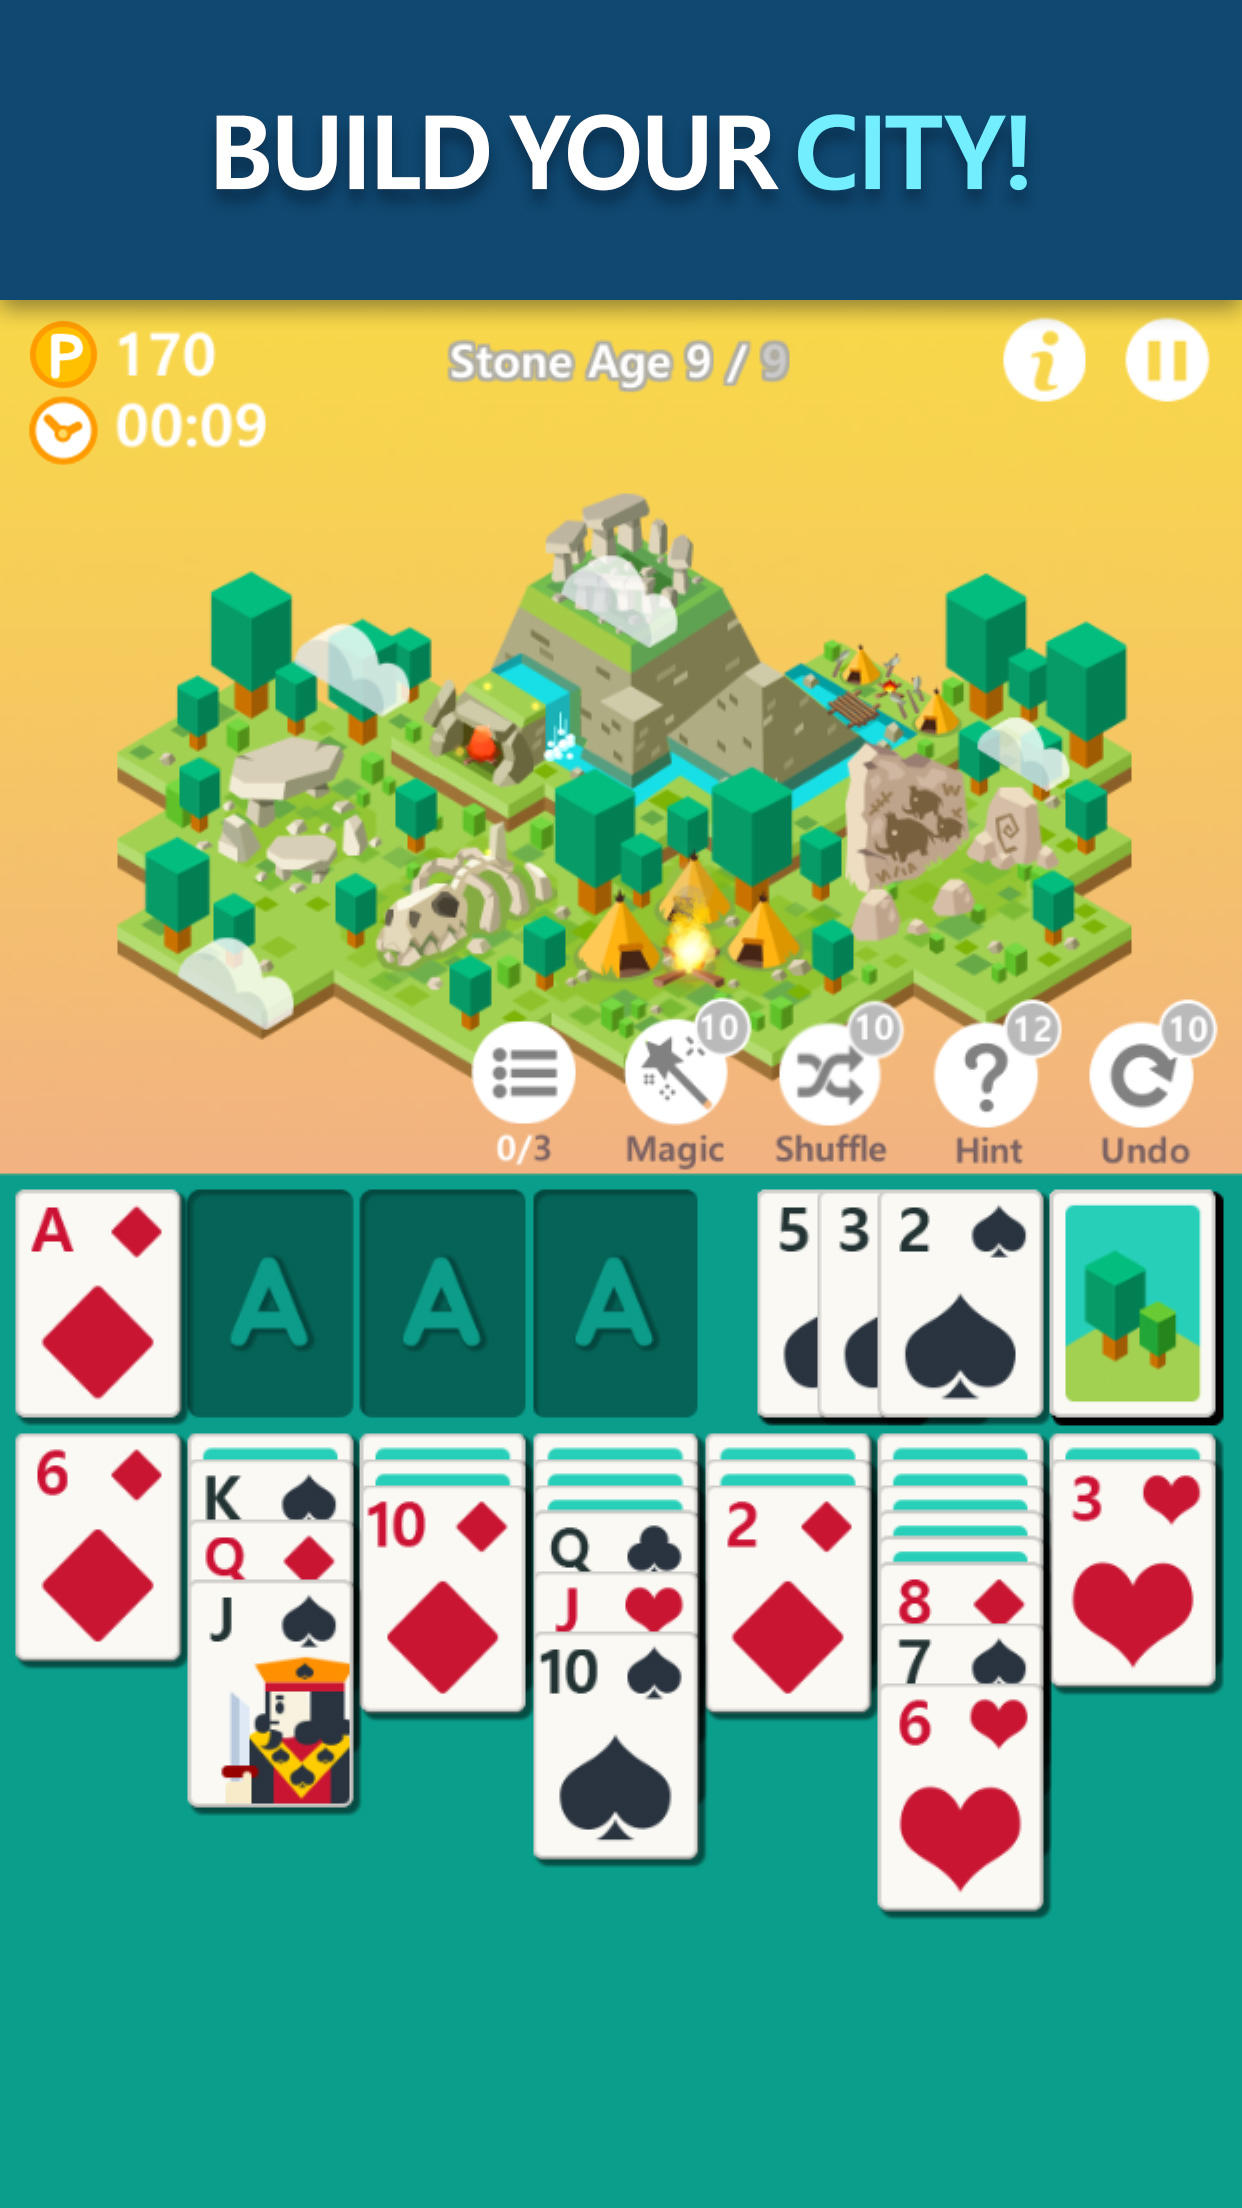 Screenshot 1 of Edad ng solitaryo - Card Game 1.7.0